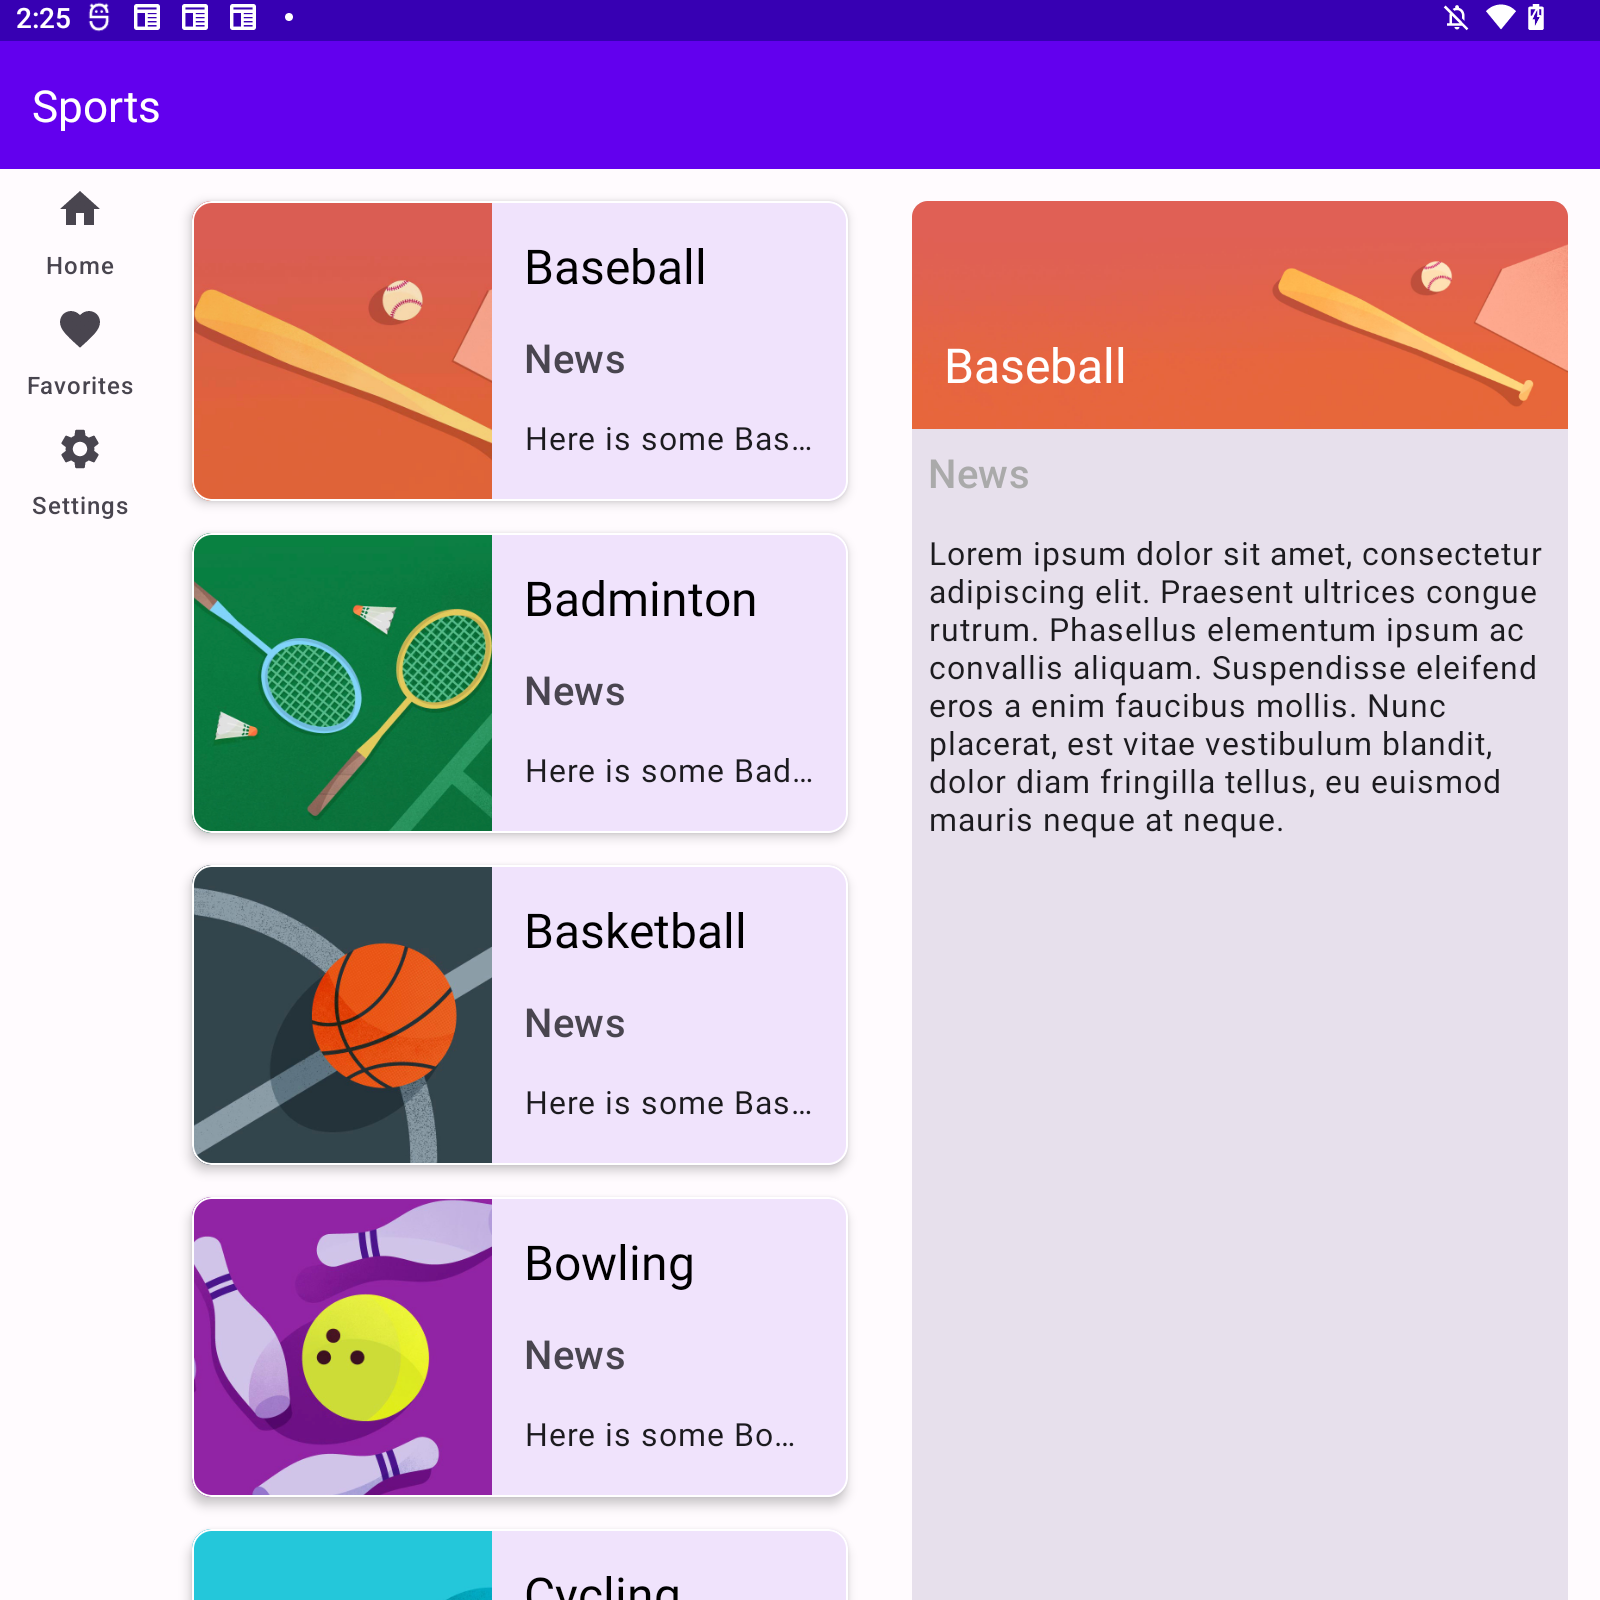 La app de Deportes muestra un riel de navegación, la lista de deportes y las noticias cuando se asocia con la clase de tamaño de ancho de ventana media.